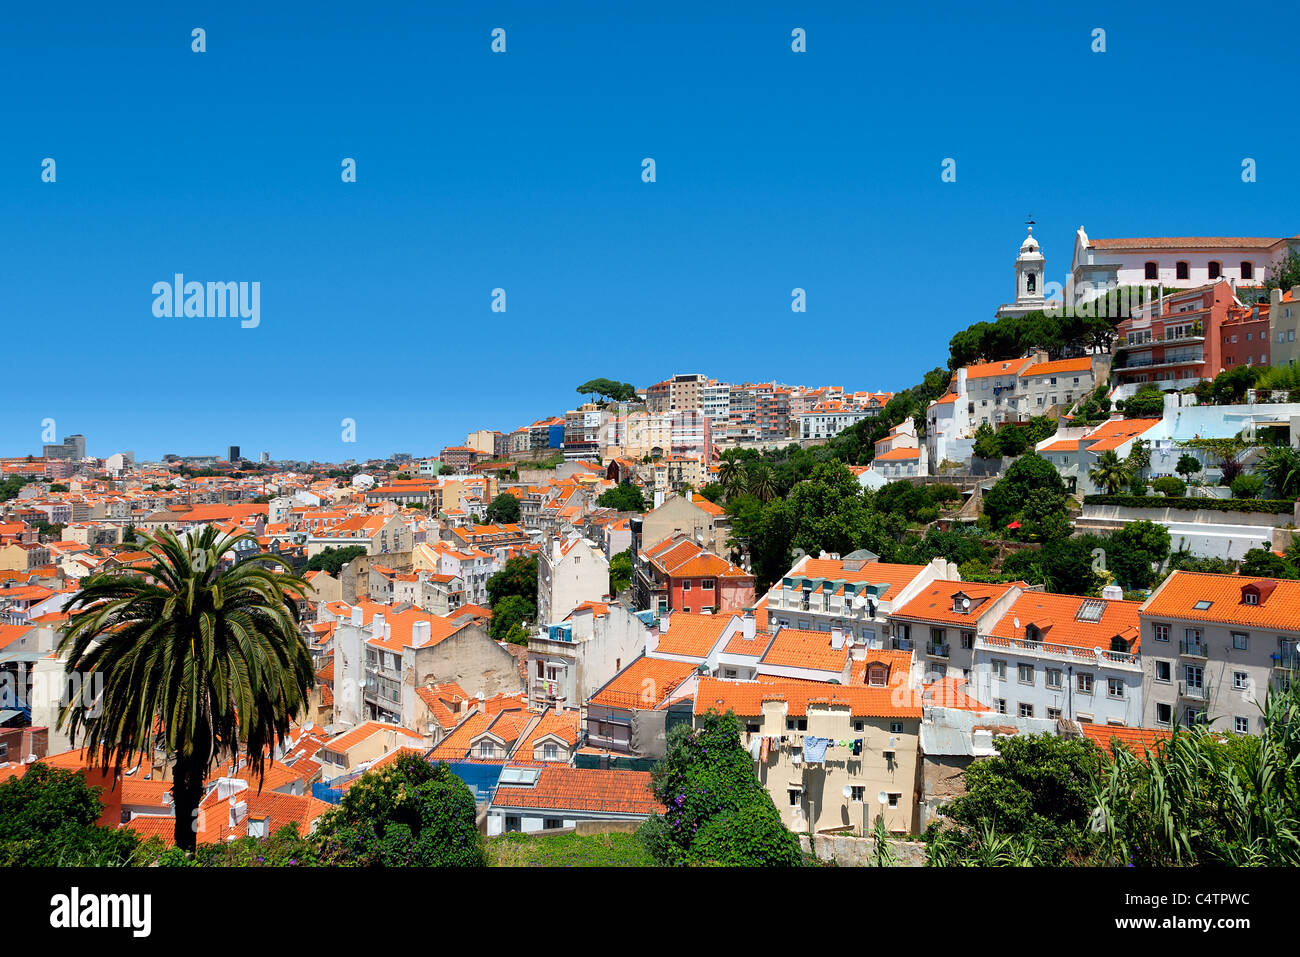 Portugal, Lisboa, la iglesia y el Miradouro de Graça visto desde la calle Costa do Castelo Foto de stock